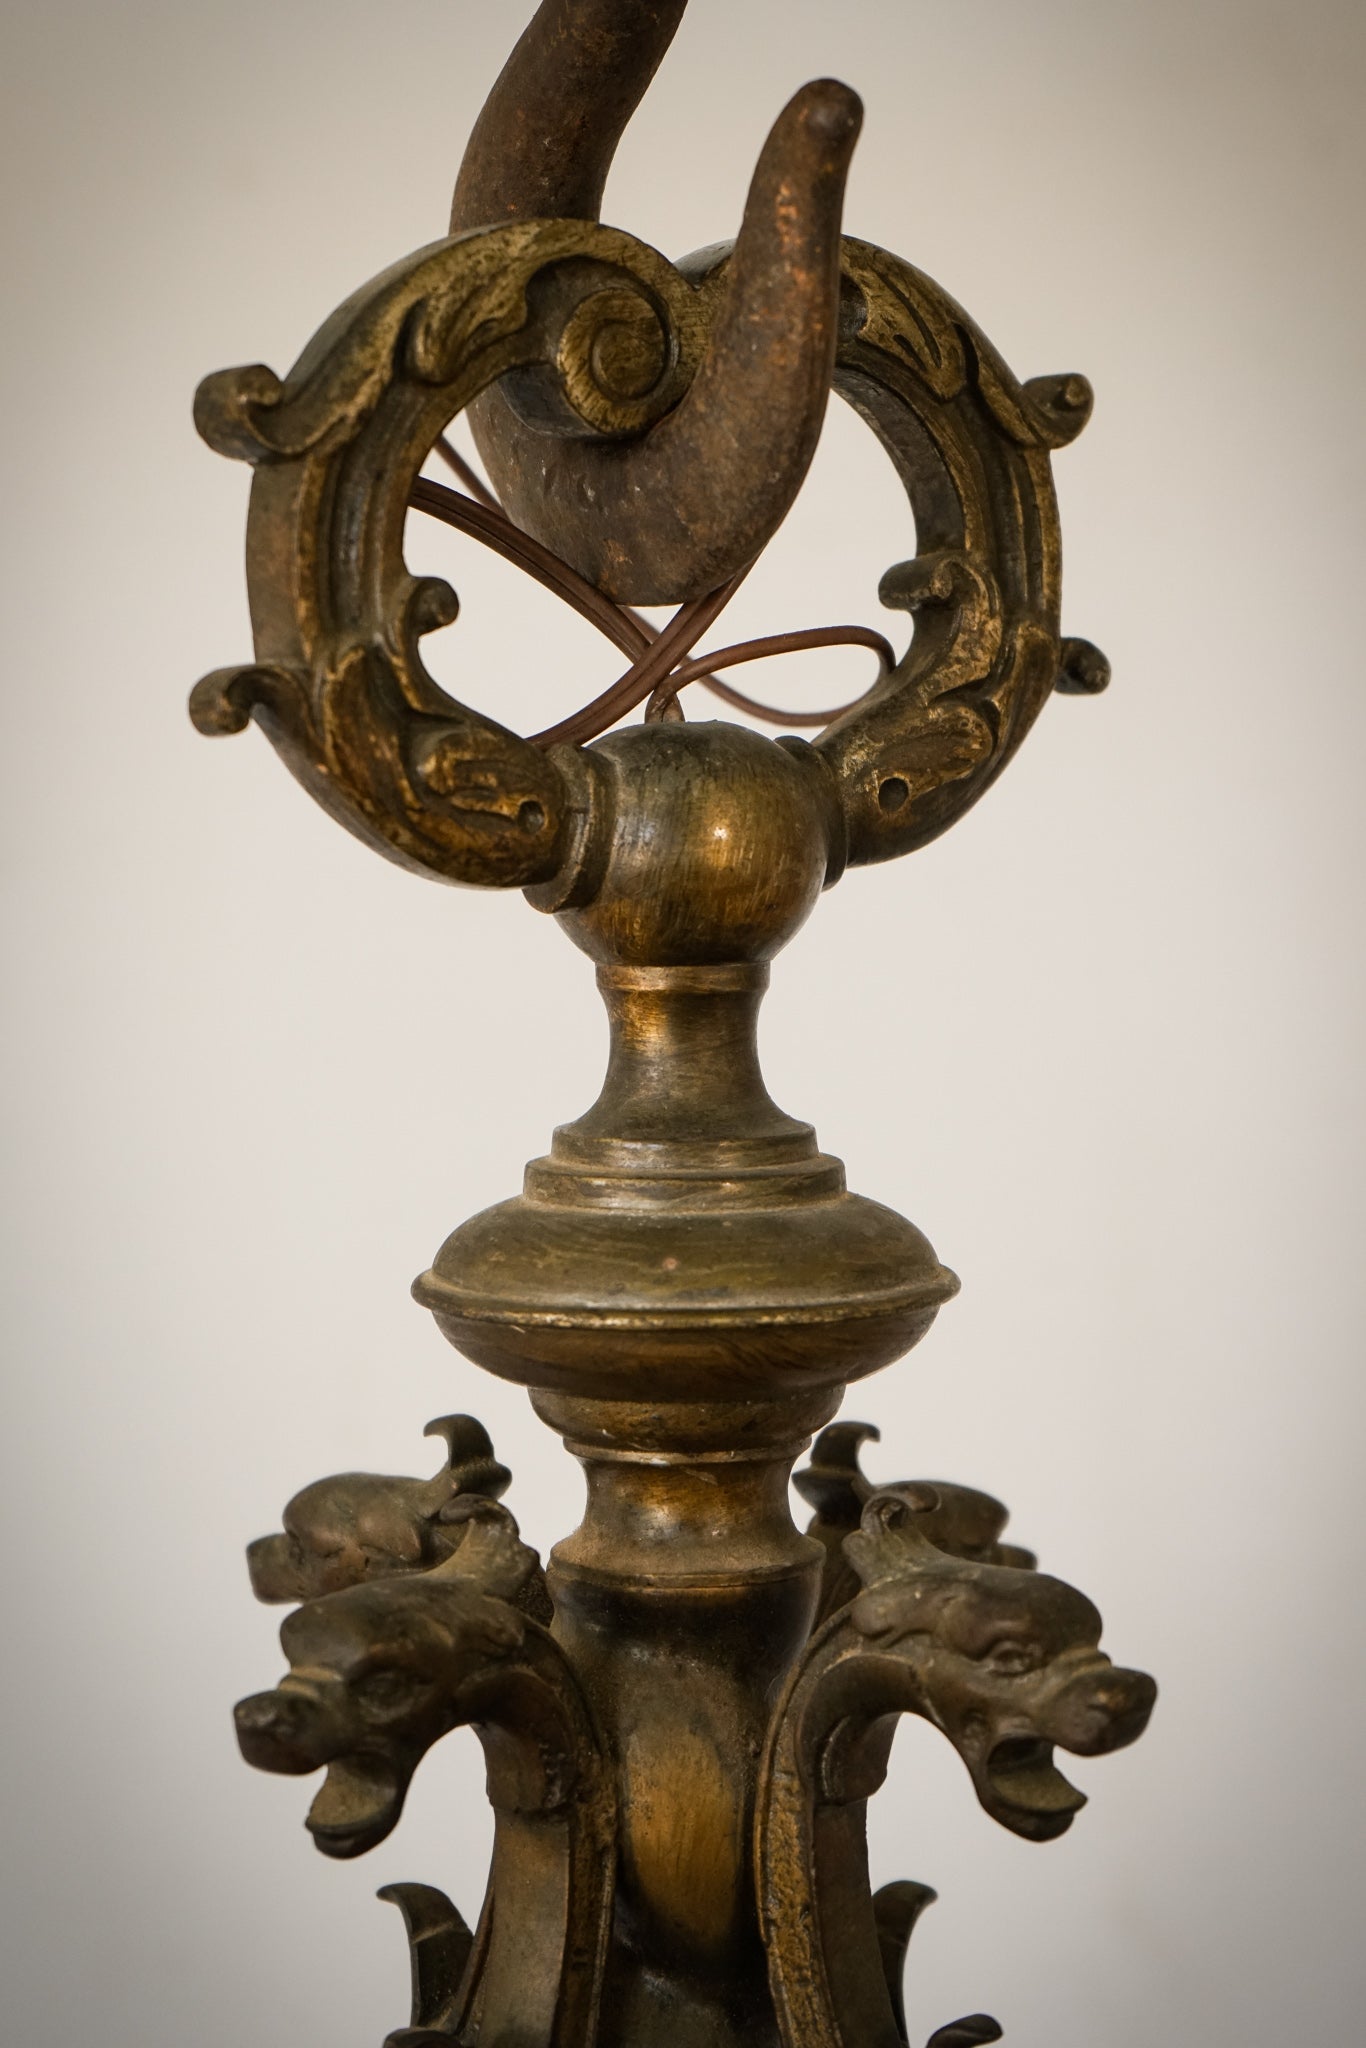 Magníficos candelabros de bronce o latón con influencia de Guada